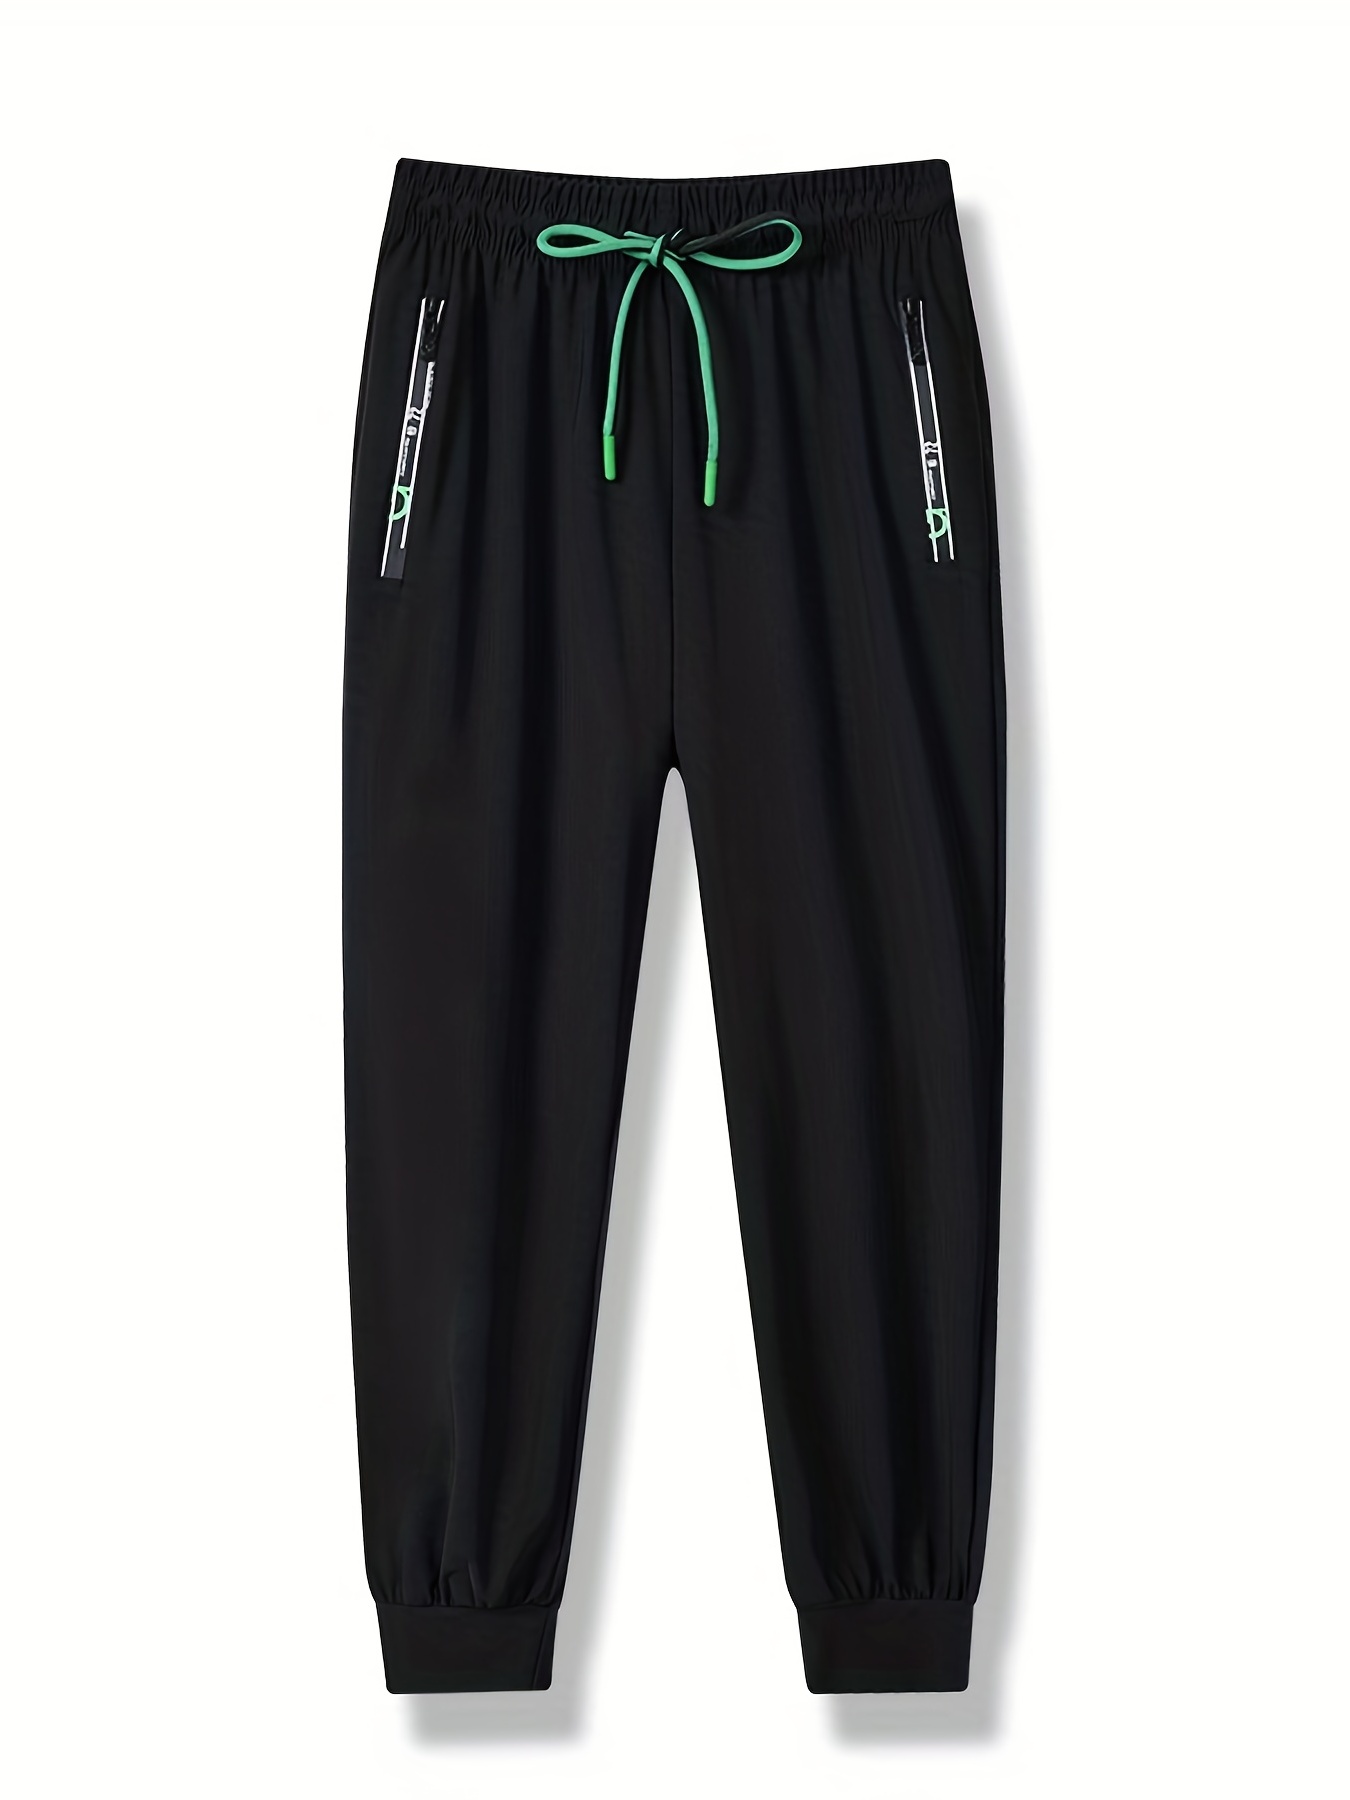 Men's Drawstring Sweatpants Casual Lounge Pajama Yoga - Temu